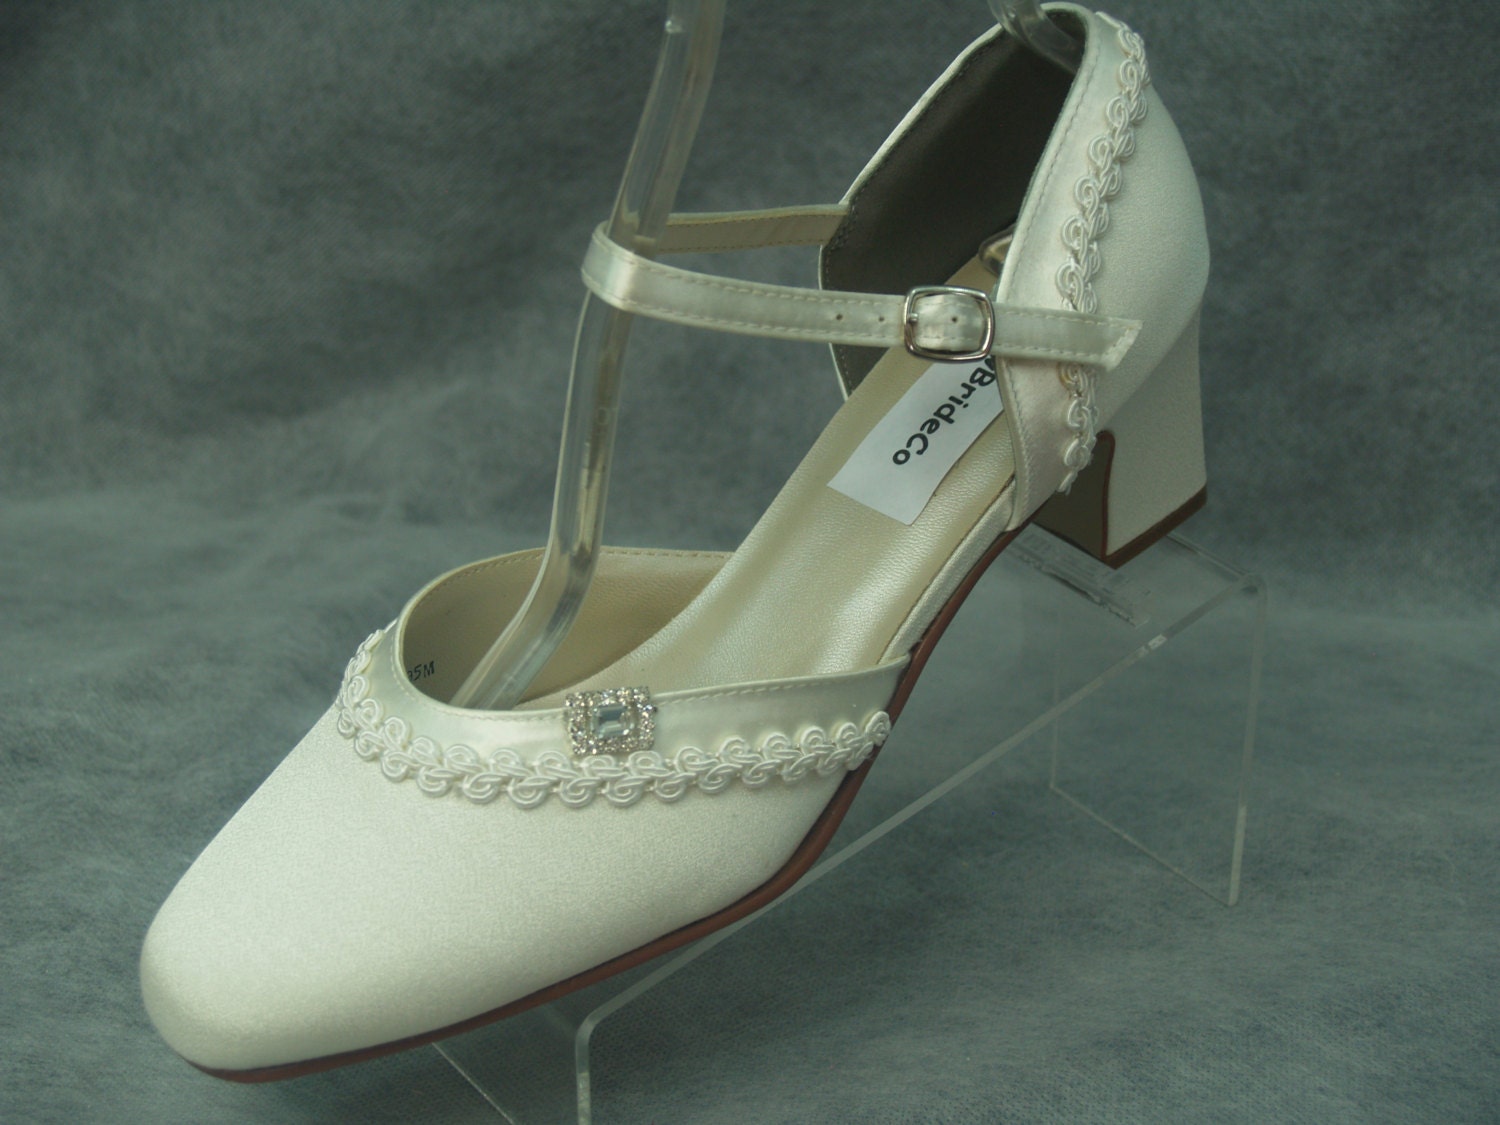 Ivory Wedding Shoes 1920s Vintage style by NewBrideCo on Etsy